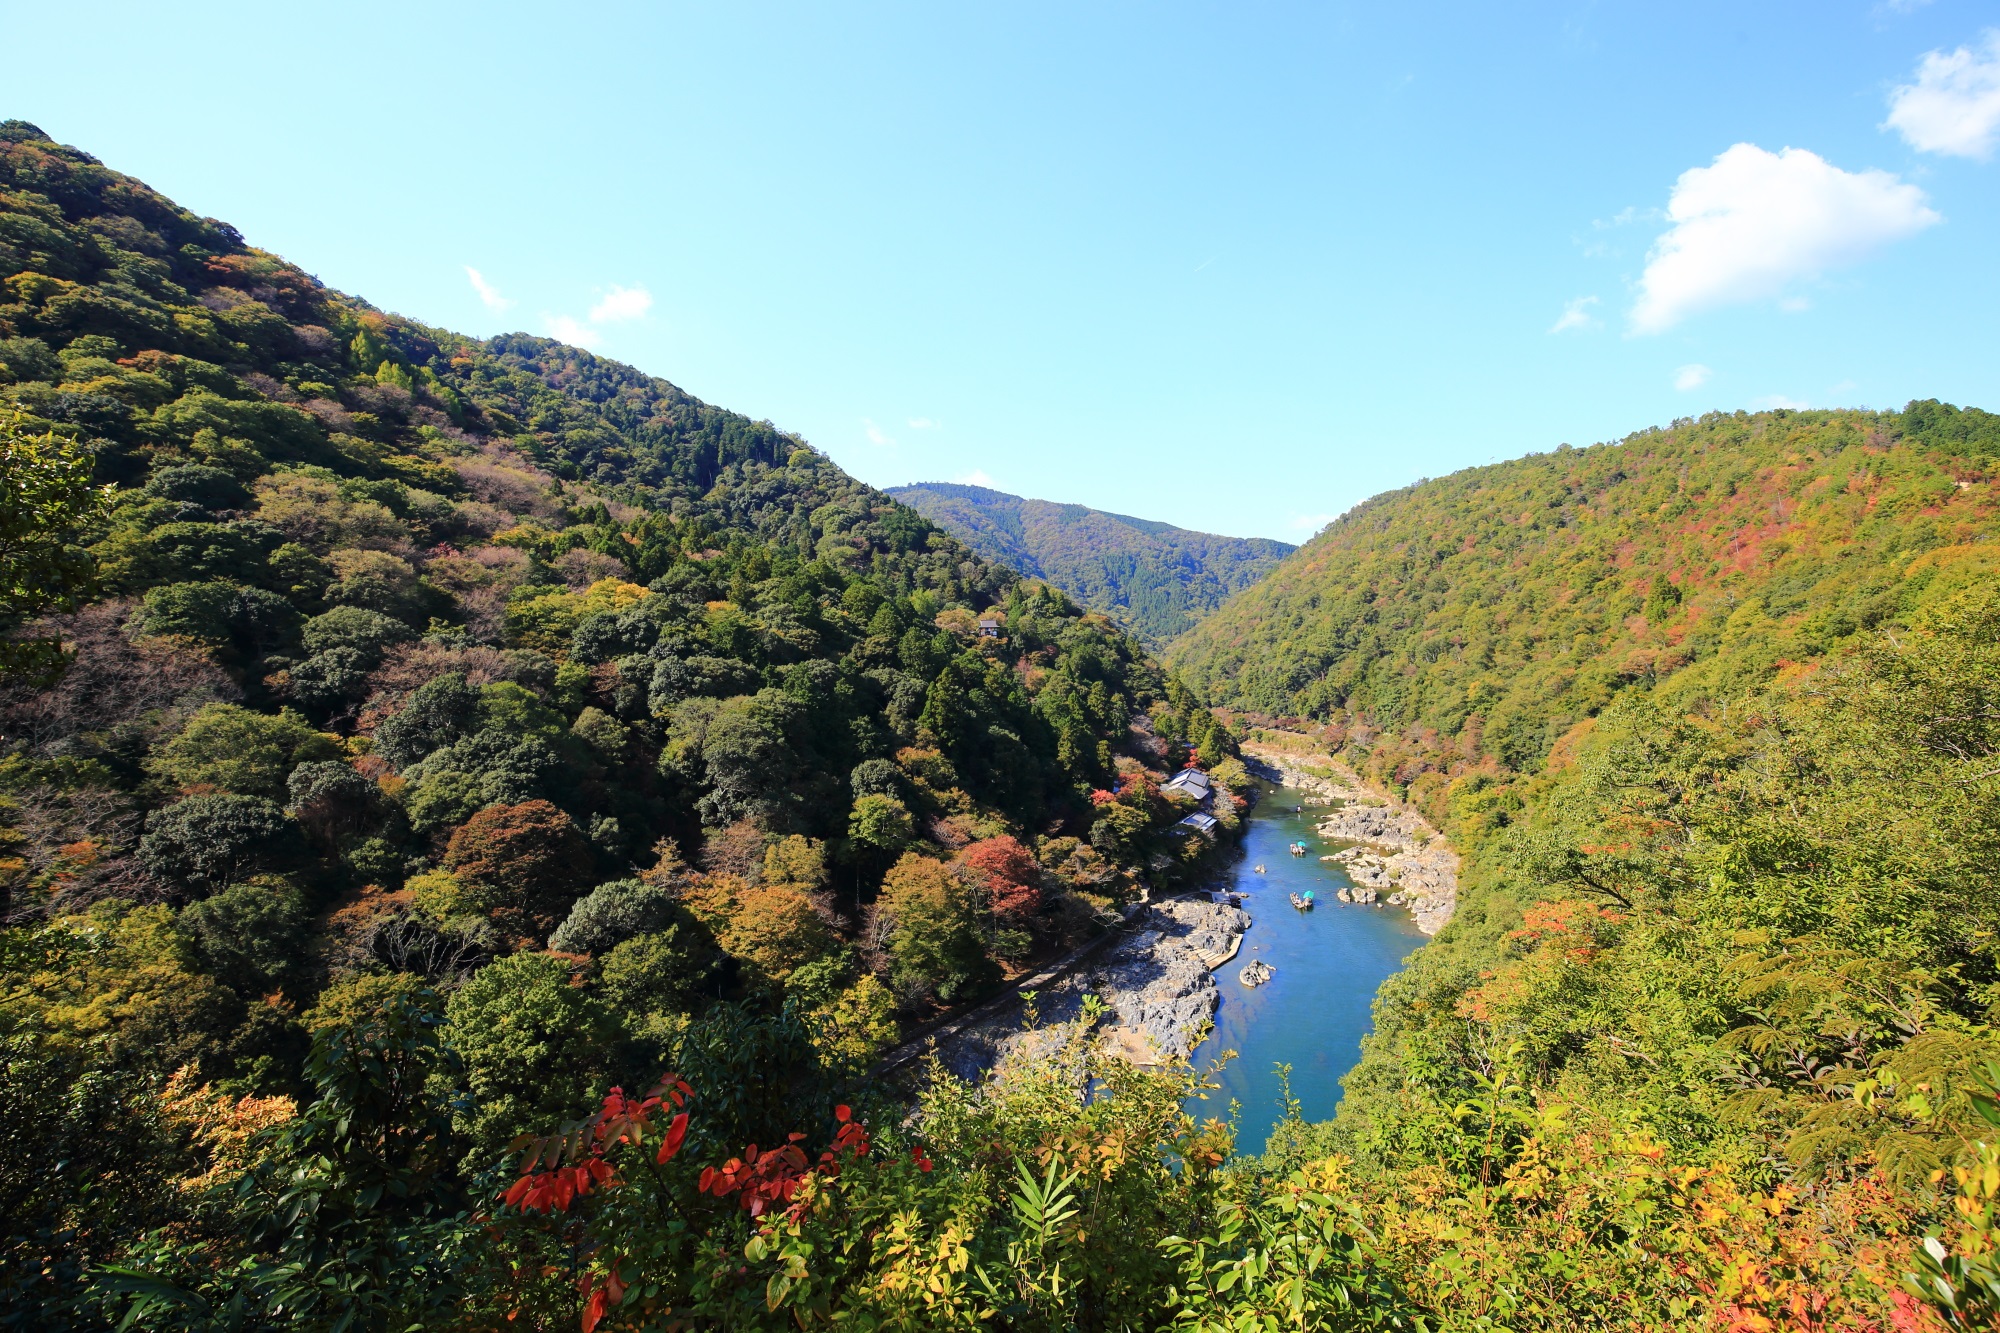 嵐山公園 亀岡地区の展望台から望む絶景の保津川と嵐山